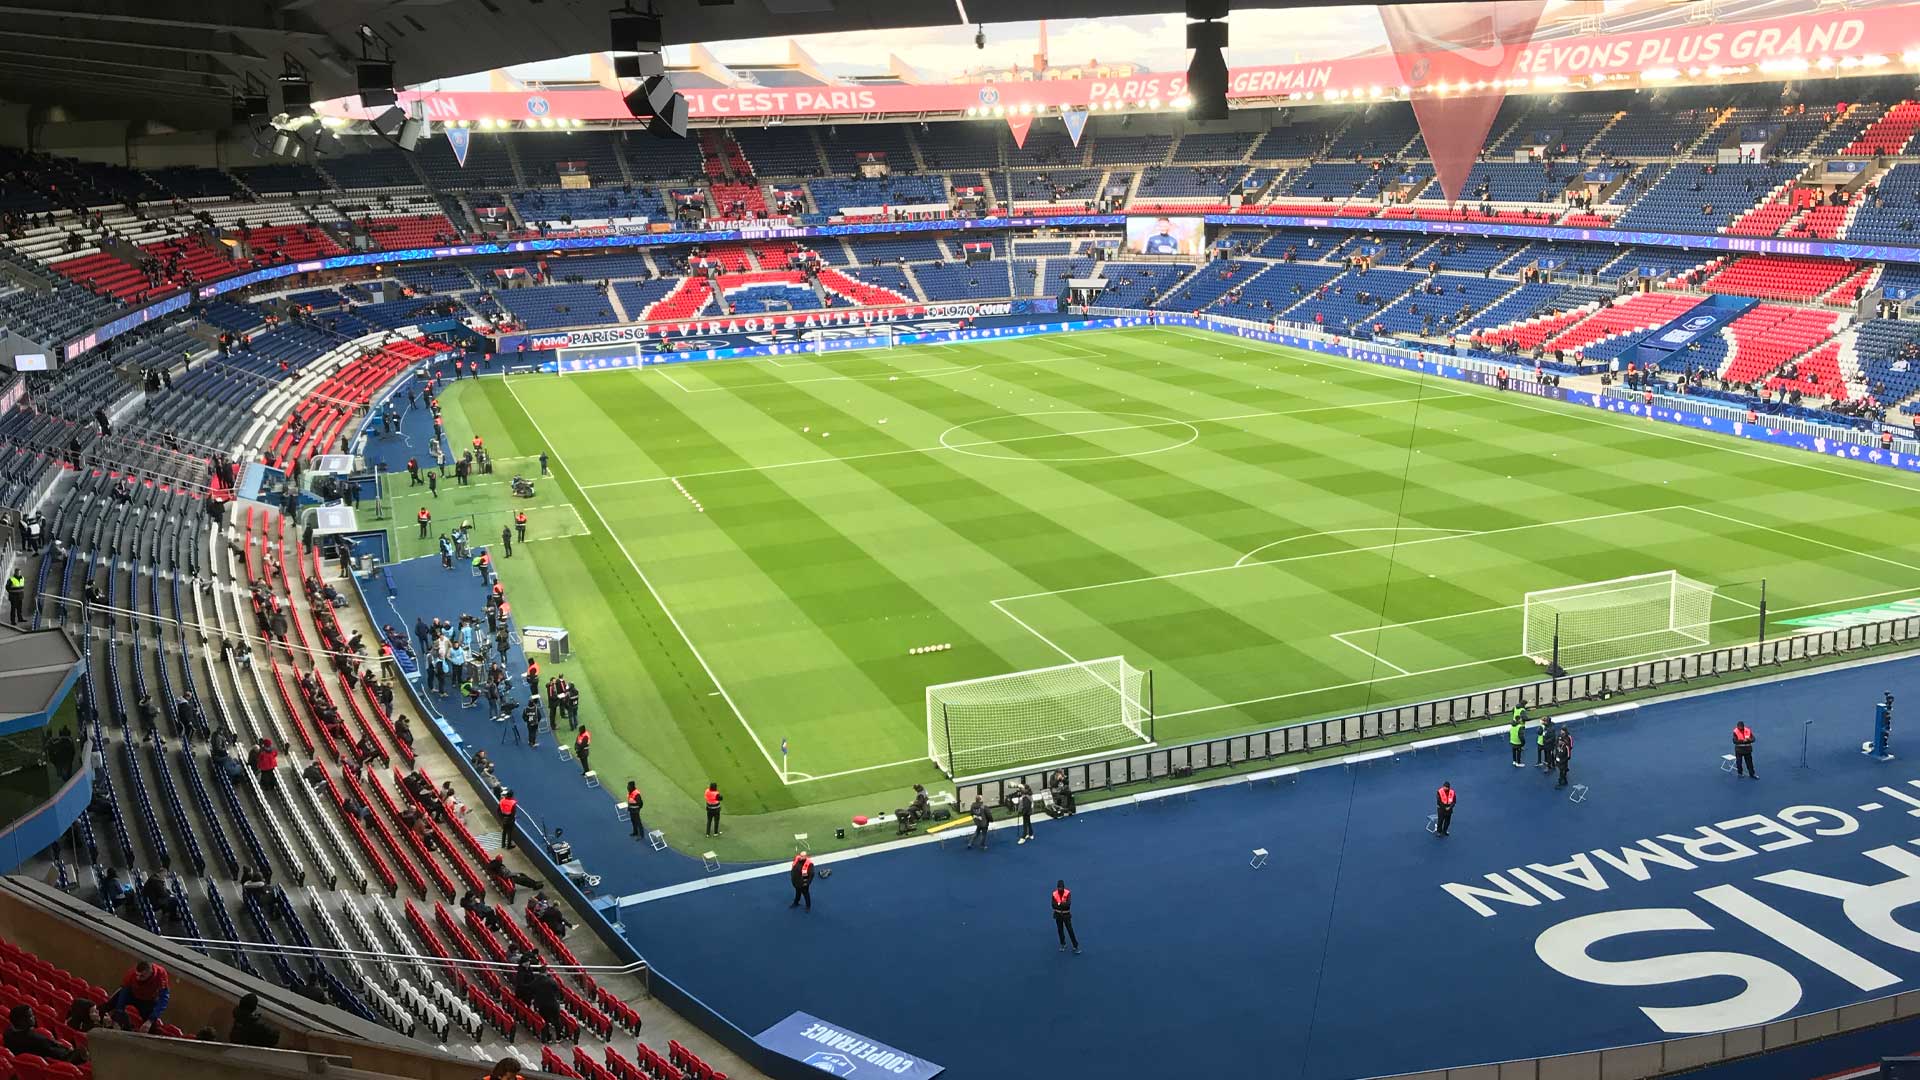 Paris St Germain's stadium